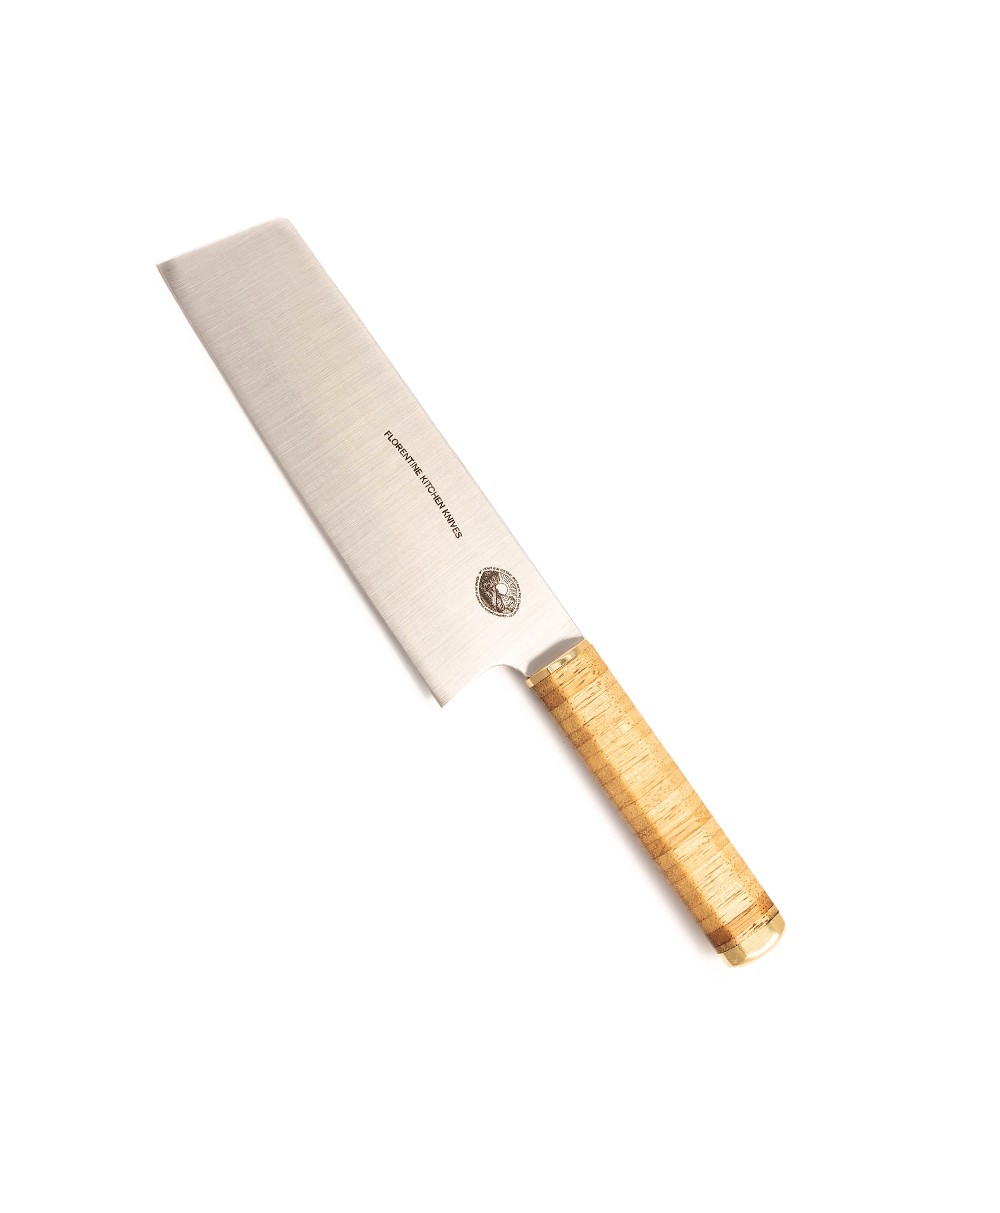 Produktbild des Kedma Nakiri Hackmesser in wood von Florentine Kitchen Knives im RAUM concept store 